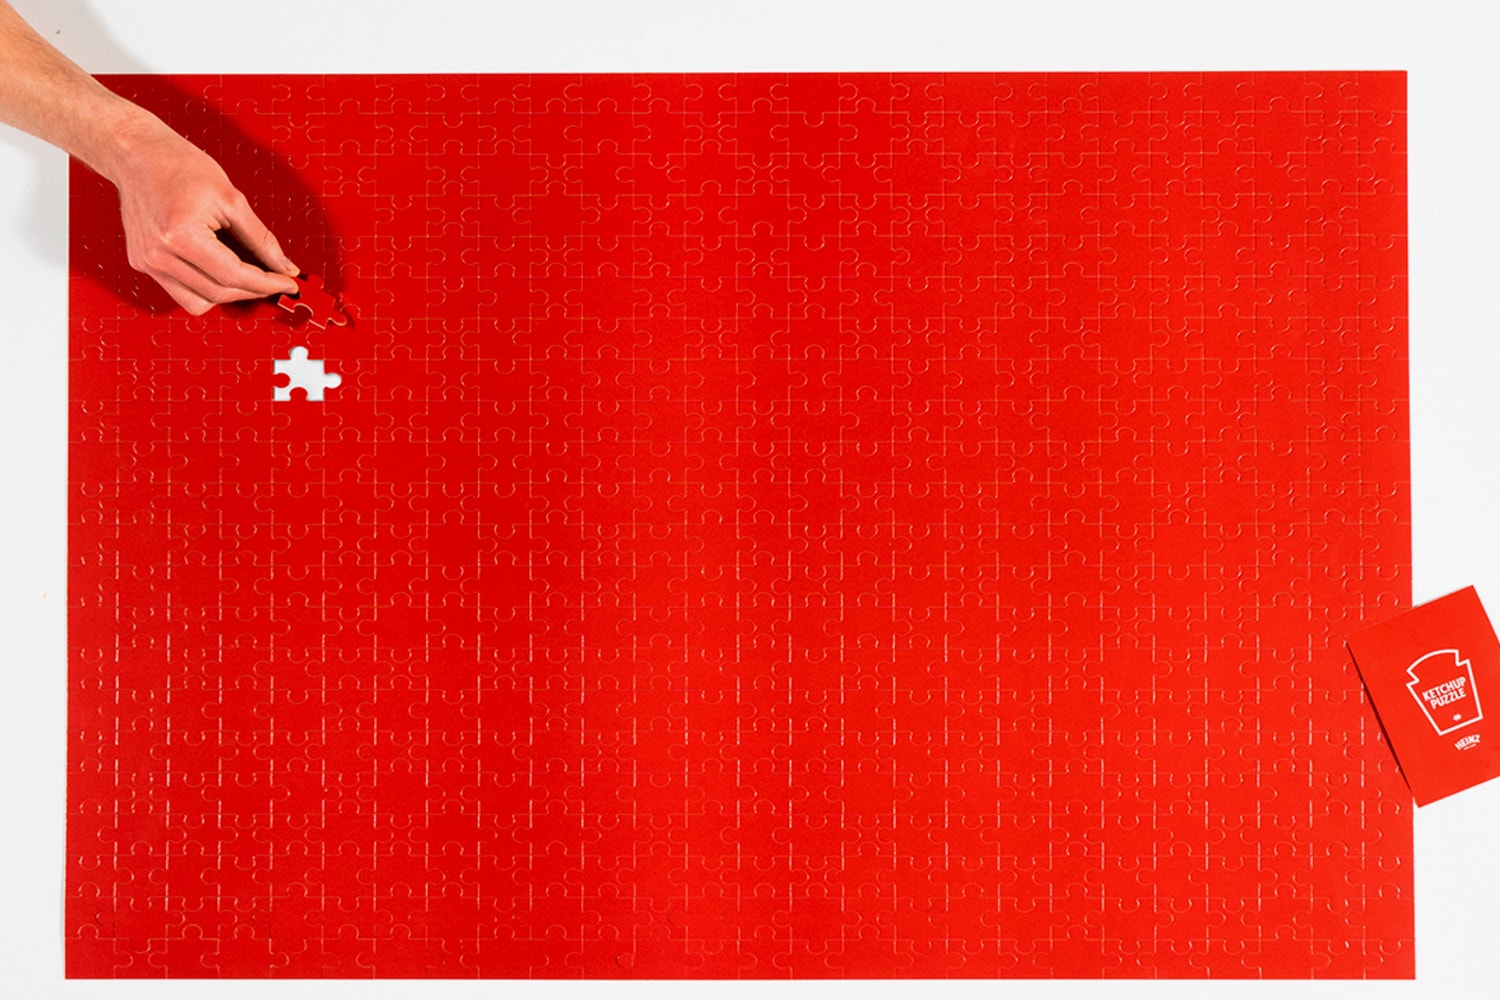 ハインツ HEINZ が“永遠に完成しない”ケチャップ色のパズルコンテストを開催 Heinz Ketchup Red Puzzle Contest Announcement info 570 piece